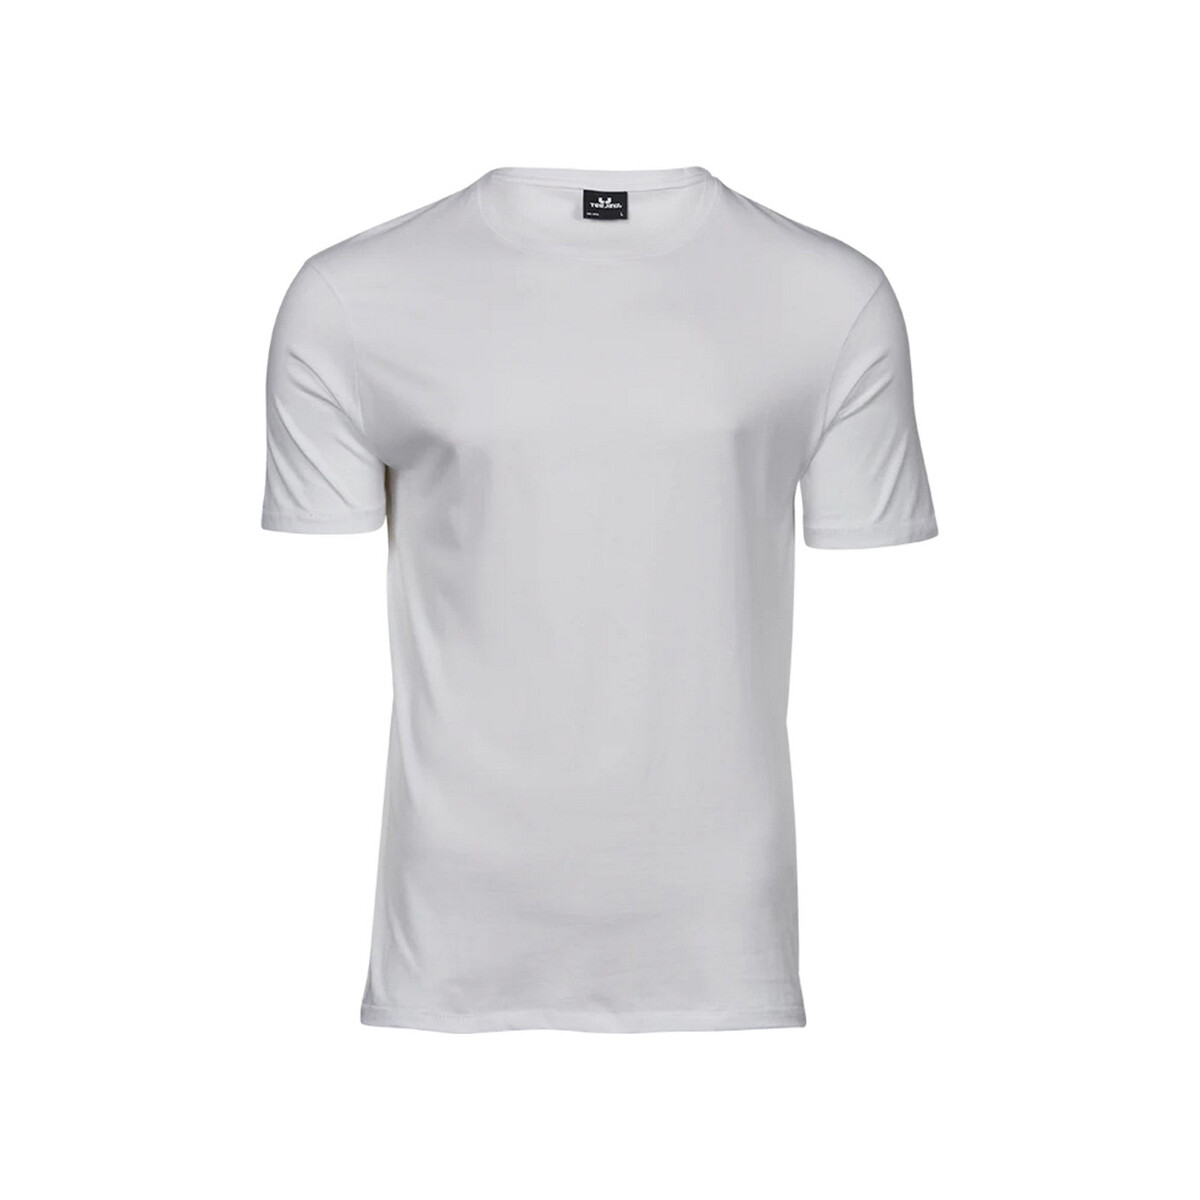 textil Hombre Camisetas manga larga Tee Jays Luxury Blanco